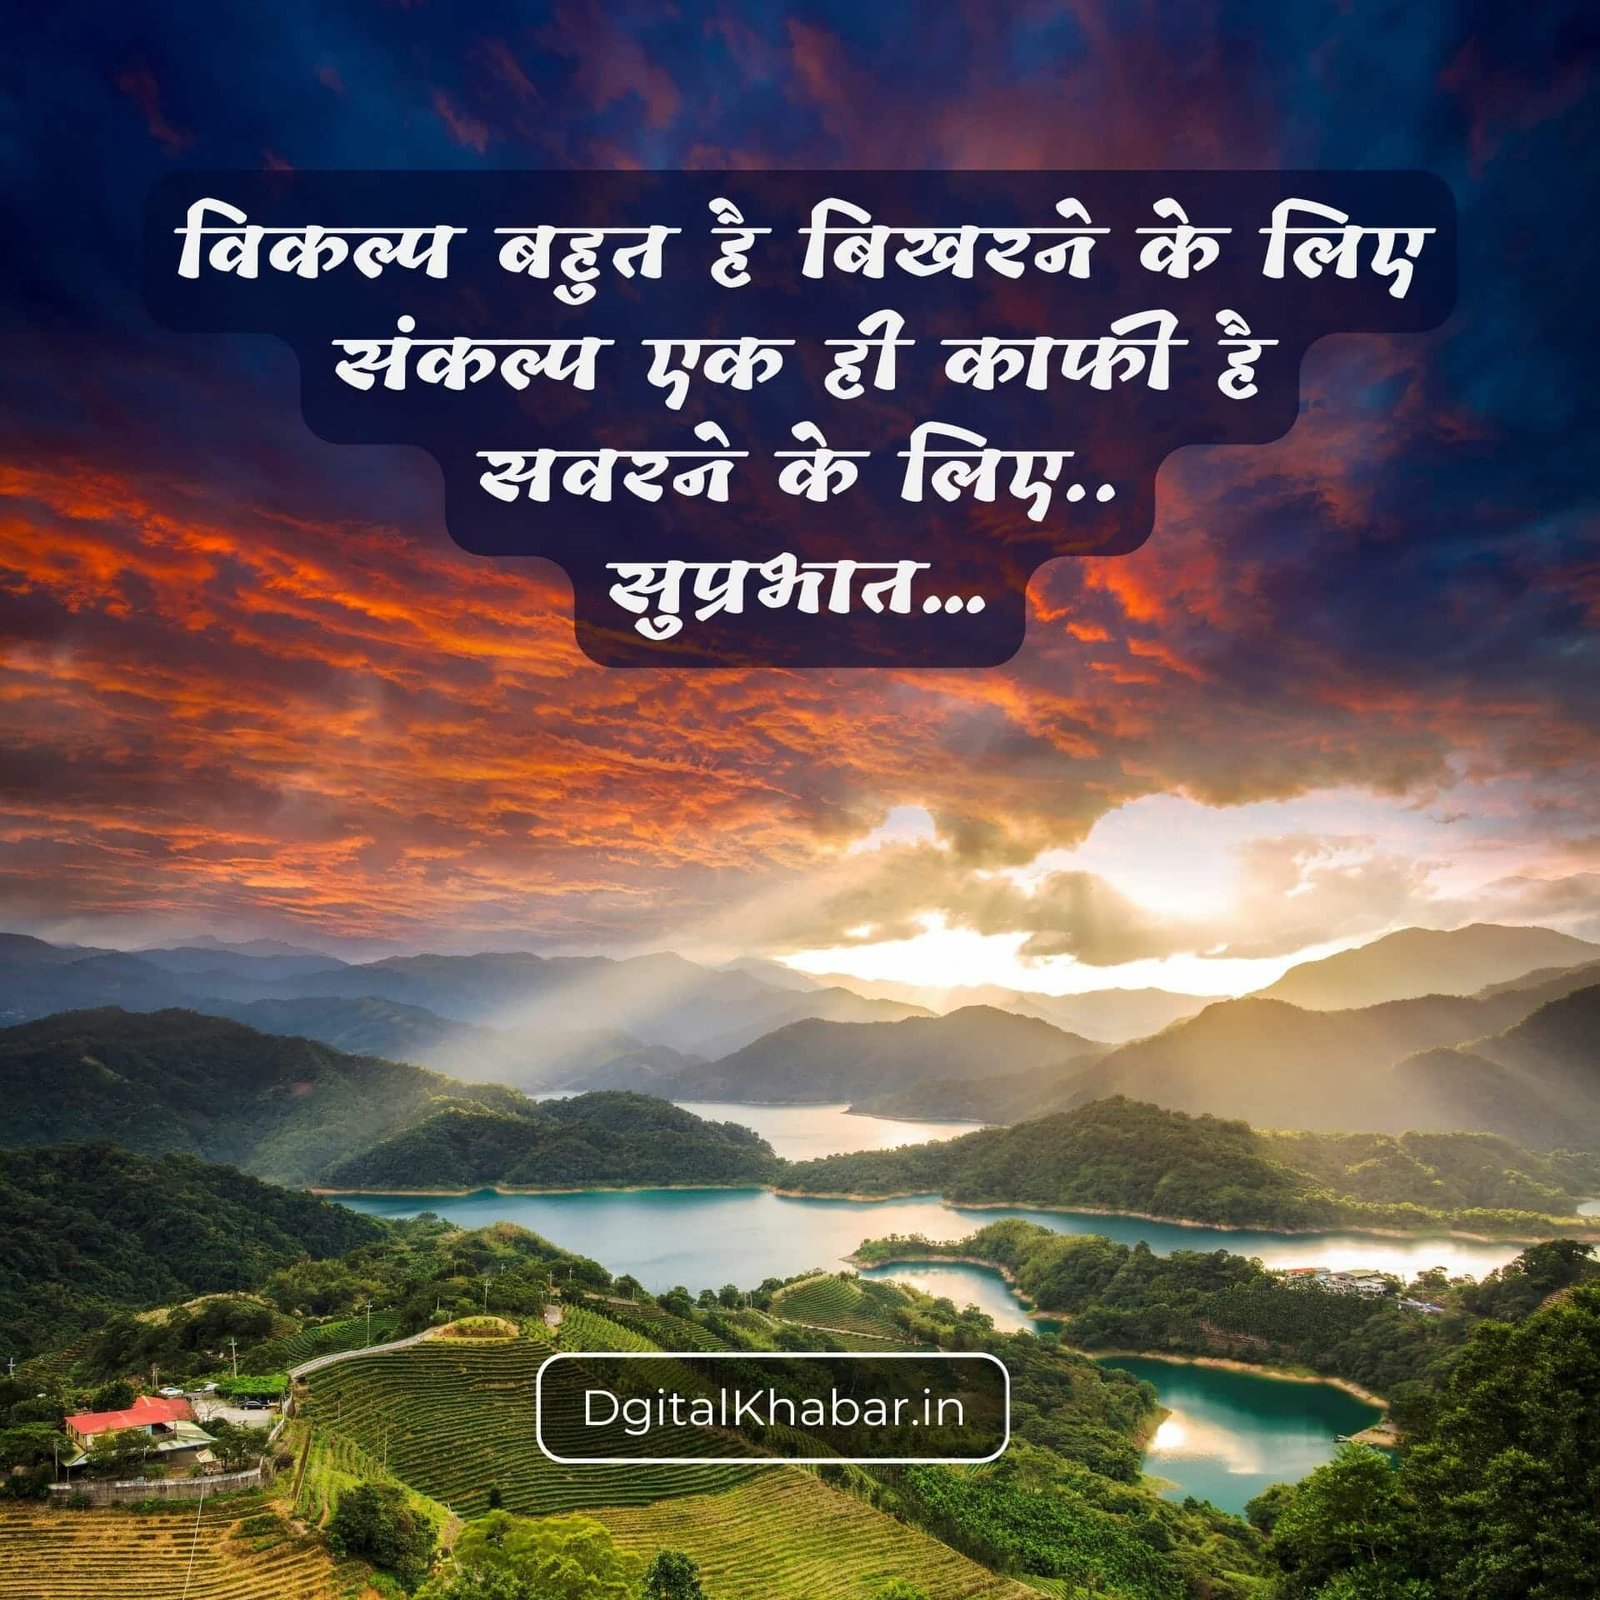 saturday good morning images in hindi